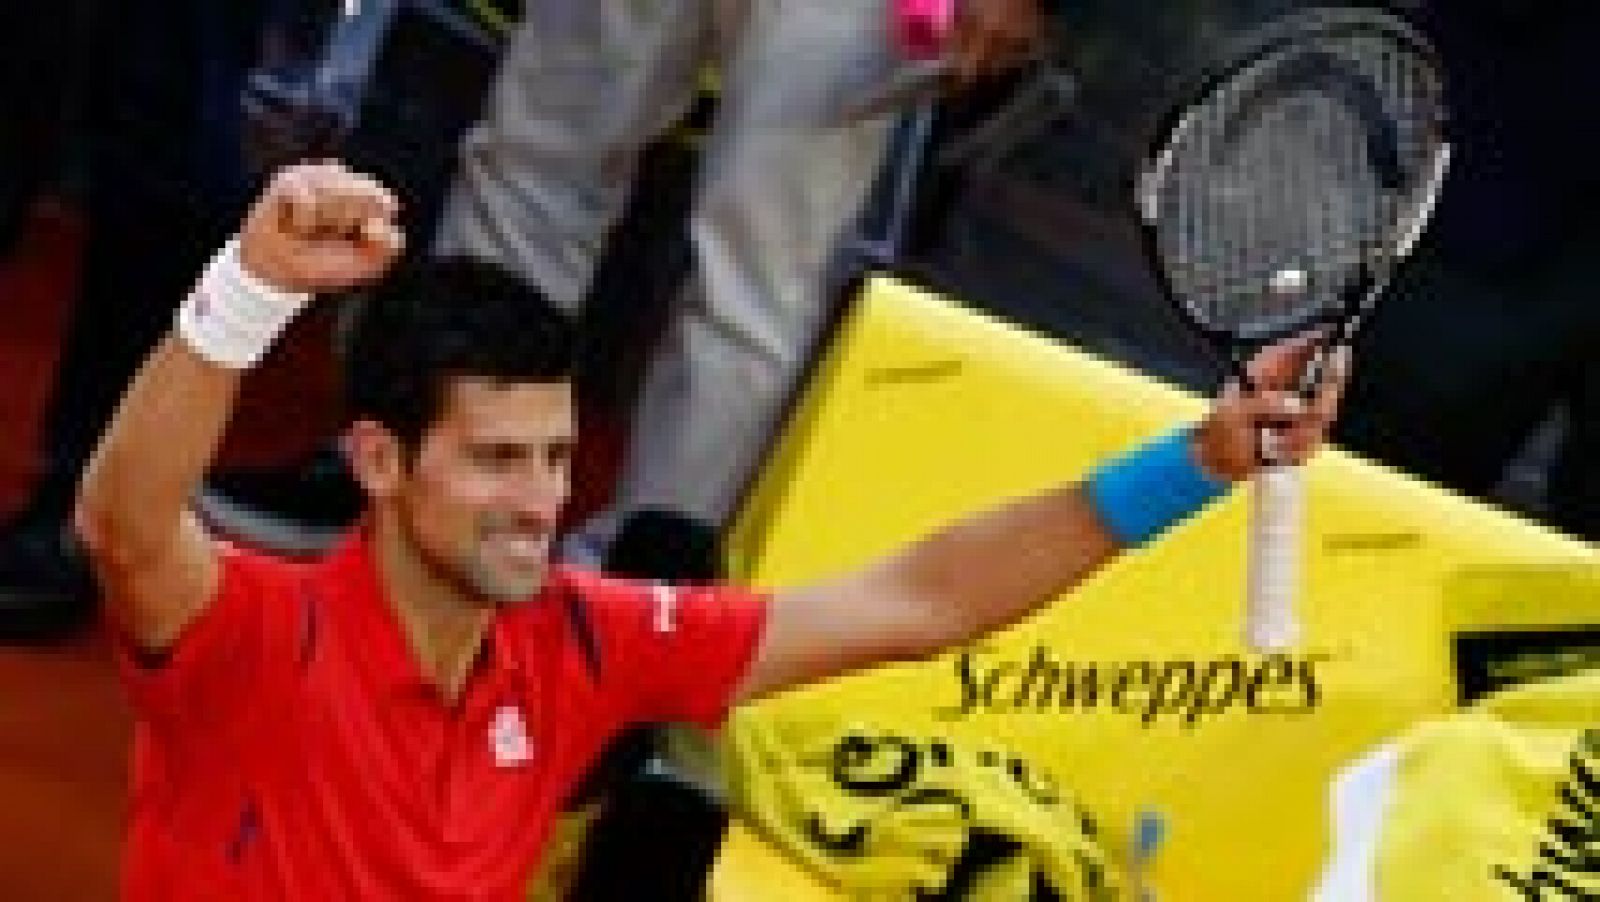 El número uno del mundo, Novak Djokovic, ha destronado al británico Andy Murray como 'rey' del Mutua Madrid Open tras vencerle en la final en tres sets, por 6-2, 3-6 y 6-3 en dos horas de partido. 'Nole' ha conseguido el Masters 1000 número 29 en su carrera deportiva y su título 64 de la ATP. Para llevarse el partido, 'Nole' tuvo que salvar siete bolas de break, en un juego final que duró 13 minutos.